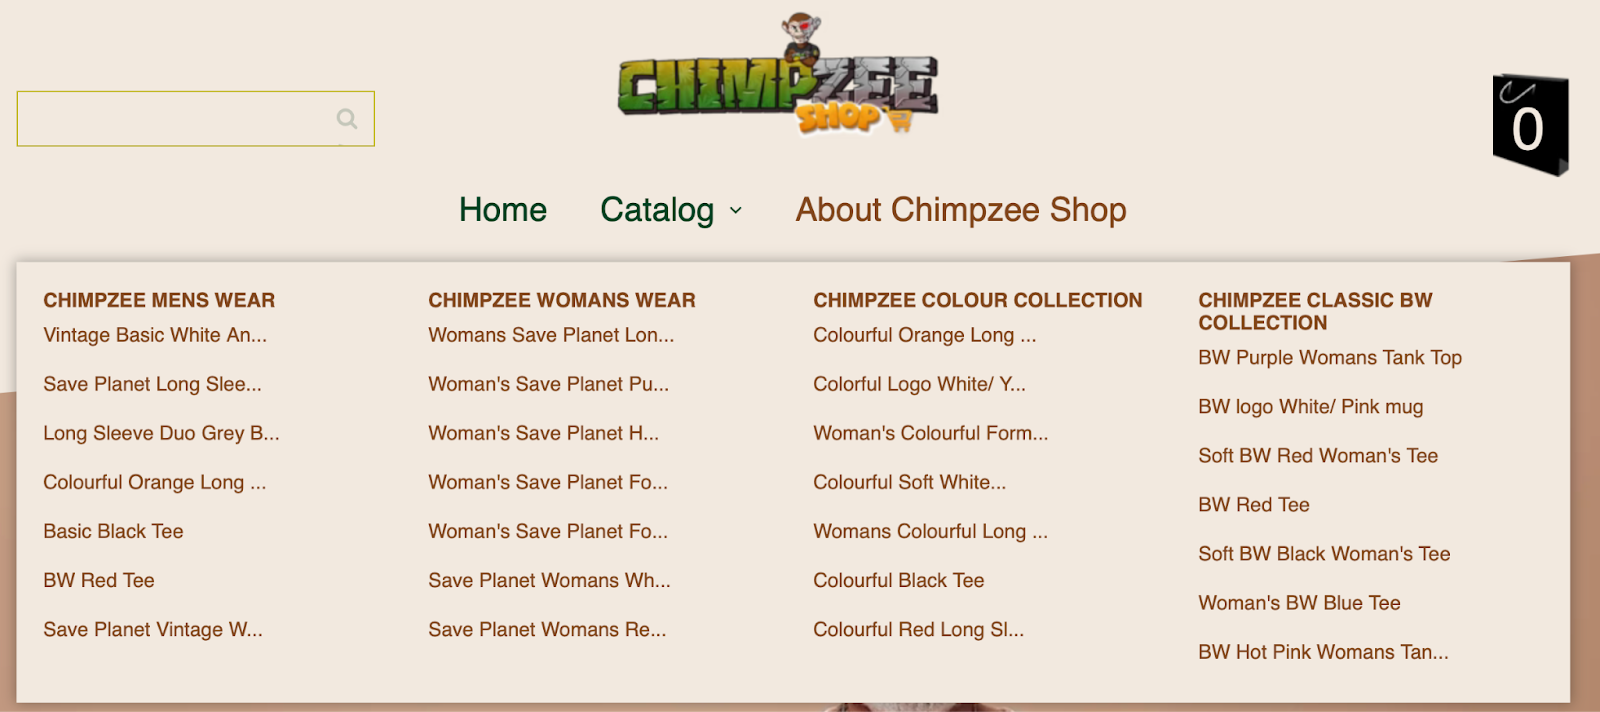 Chimpzee Shop avalikustati – sirvige lahedat varustust, hankige tasuta žetoone ja päästke planeet samal ajal